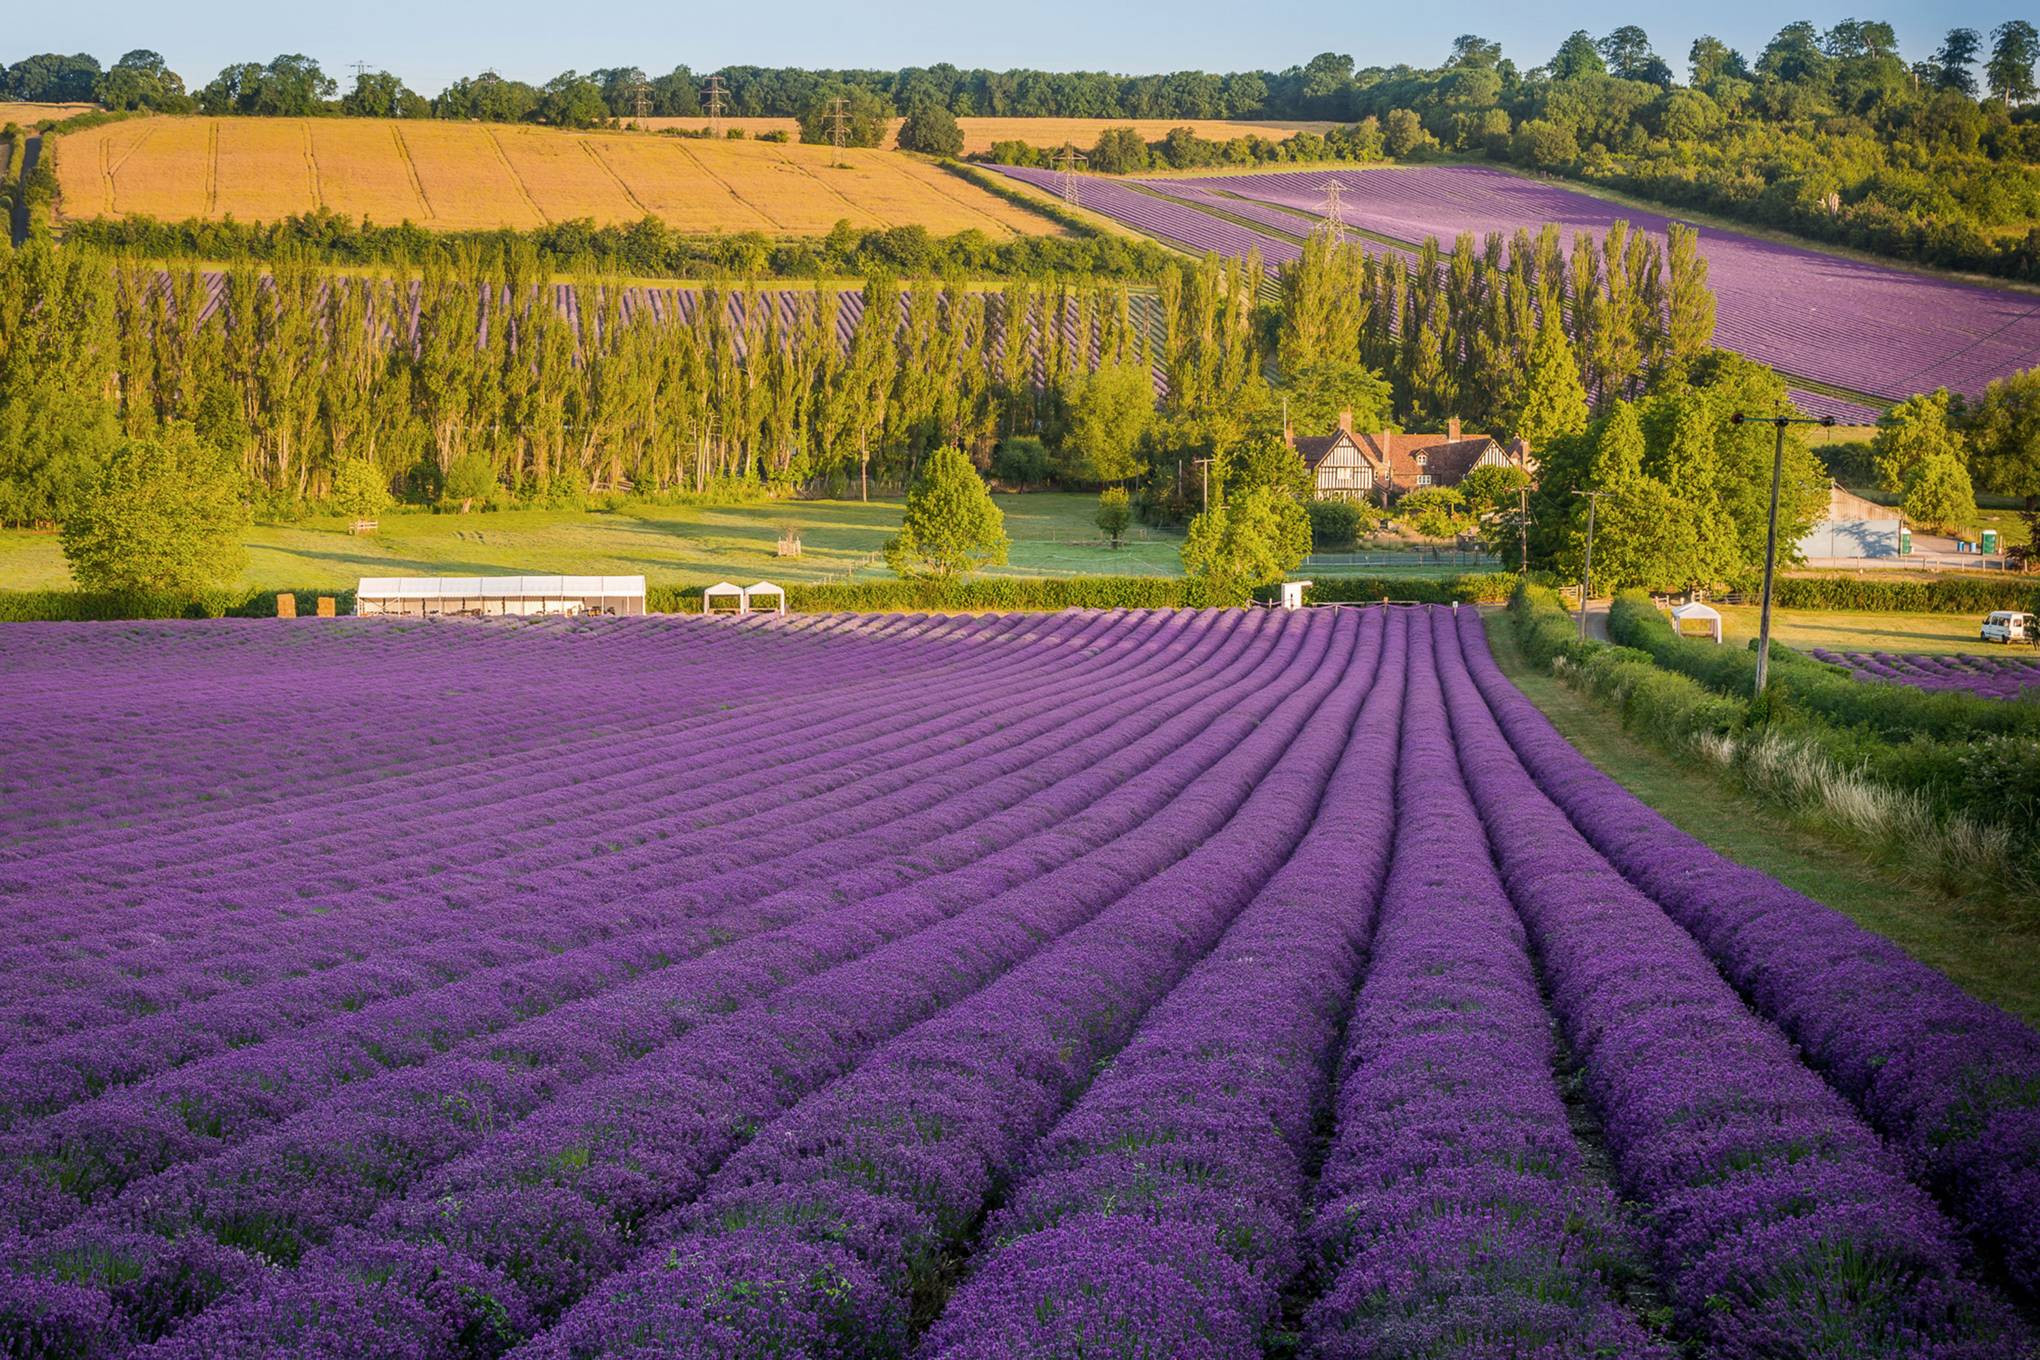 Lavender là một loại cây cỏ và cũng là một chủ đề phổ biến trong nghệ thuật. Những bức tranh với chủ đề lavender thường được vẽ với màu tím thanh lịch và vẻ đẹp nữ tính. Bức tranh sẽ giúp bạn tìm lại sự thư giãn và bình yên của đời sống. Nếu bạn yêu thích màu tím và tìm kiếm một bức tranh đẹp, hãy xem ngay những tác phẩm này.